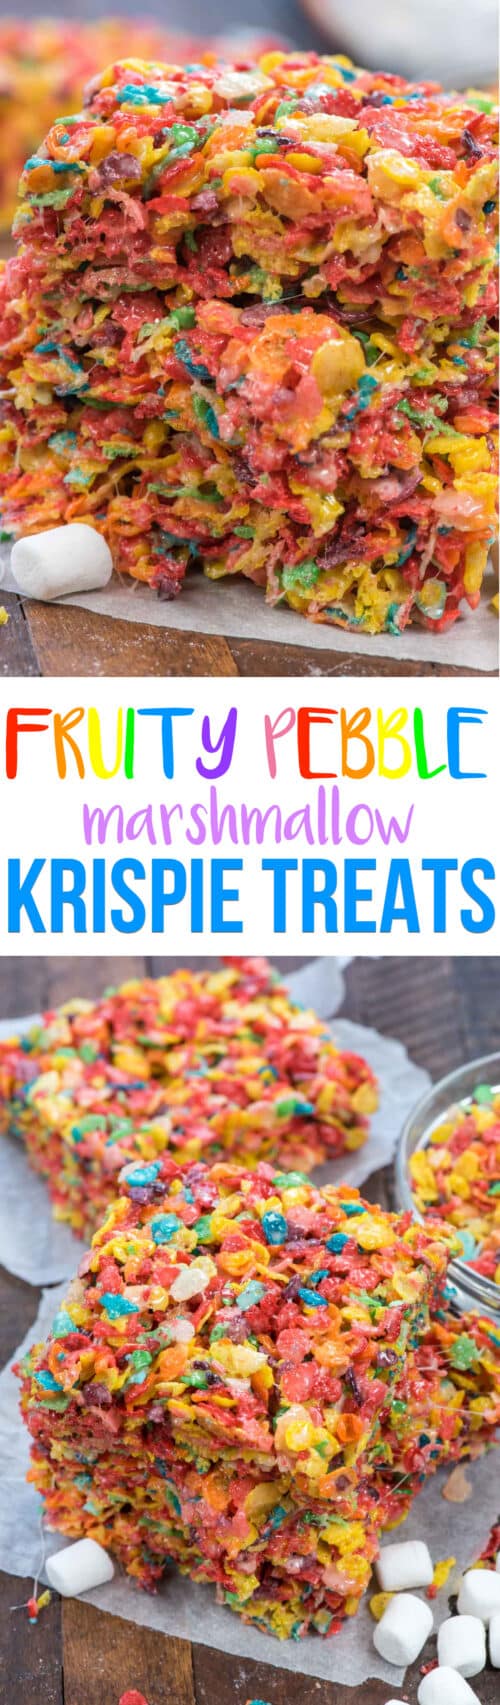 Fruity Pebble Krispie Treats - Crazy for Crust